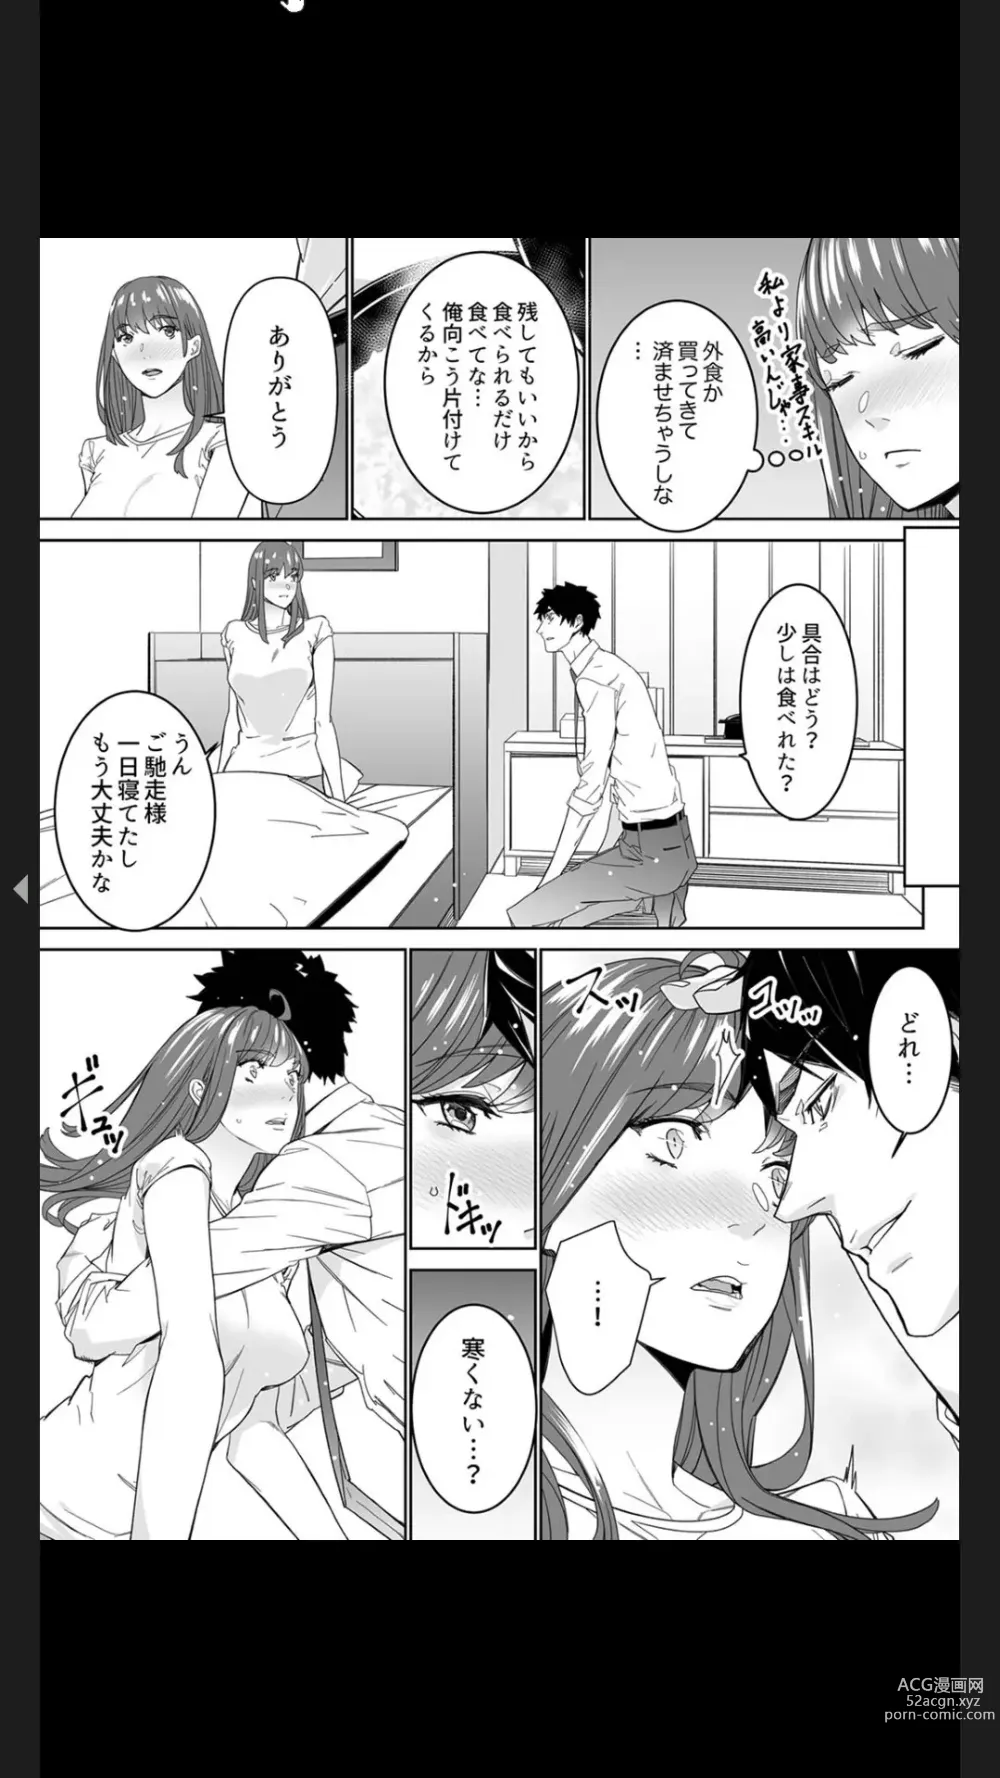 Page 105 of manga Koitsu no SEX, Do-S Sugi...!